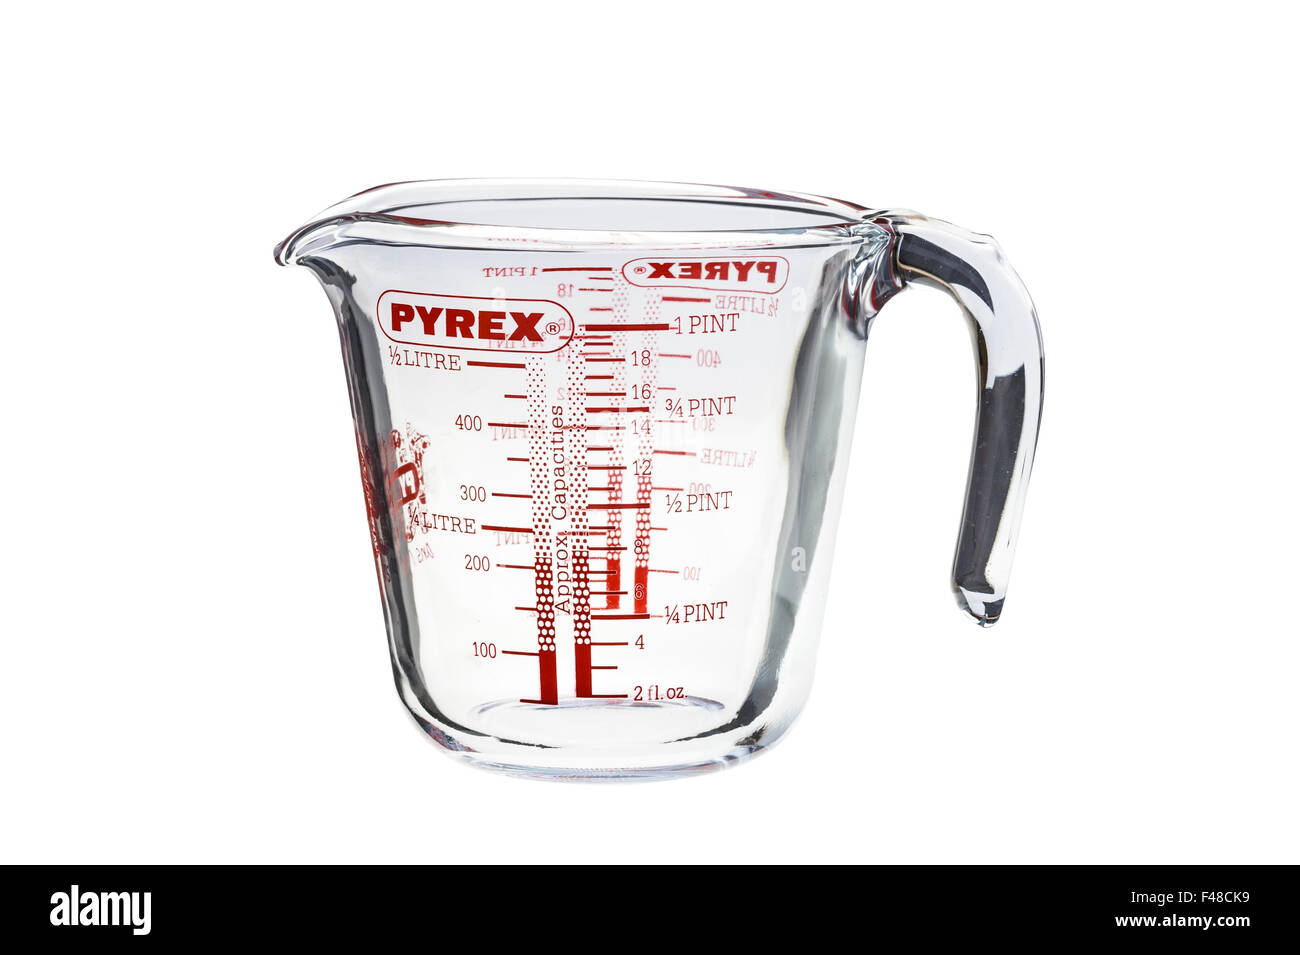 Pyrex graduated measuring jug Stock Photo